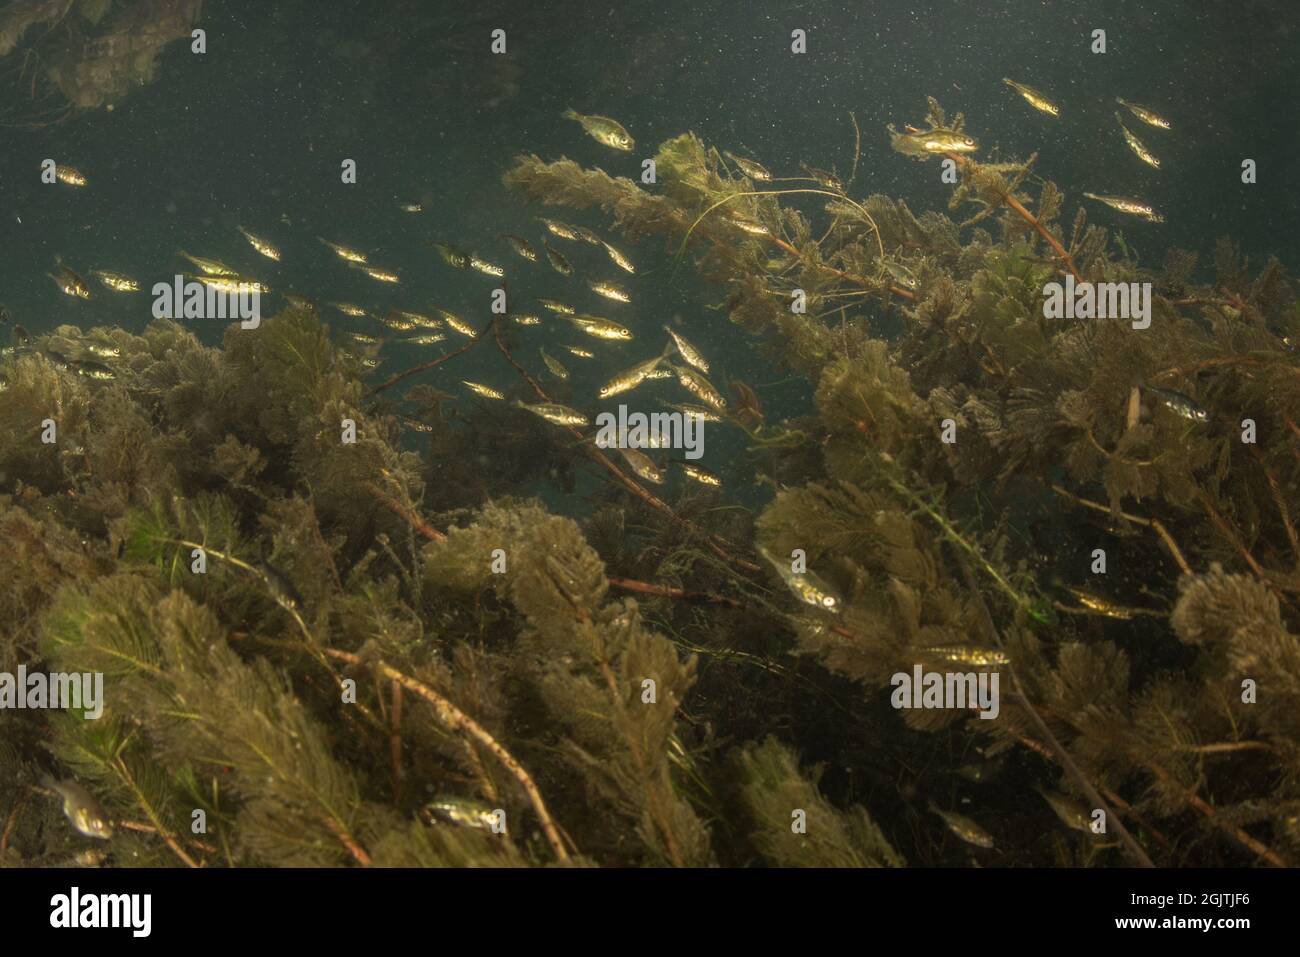 Les épinoches à trois épines (Gasterosteus aculeatus) se trouvent dans une rivière d'eau douce de Californie, les poissons s'agrégent dans les échalotes. Banque D'Images